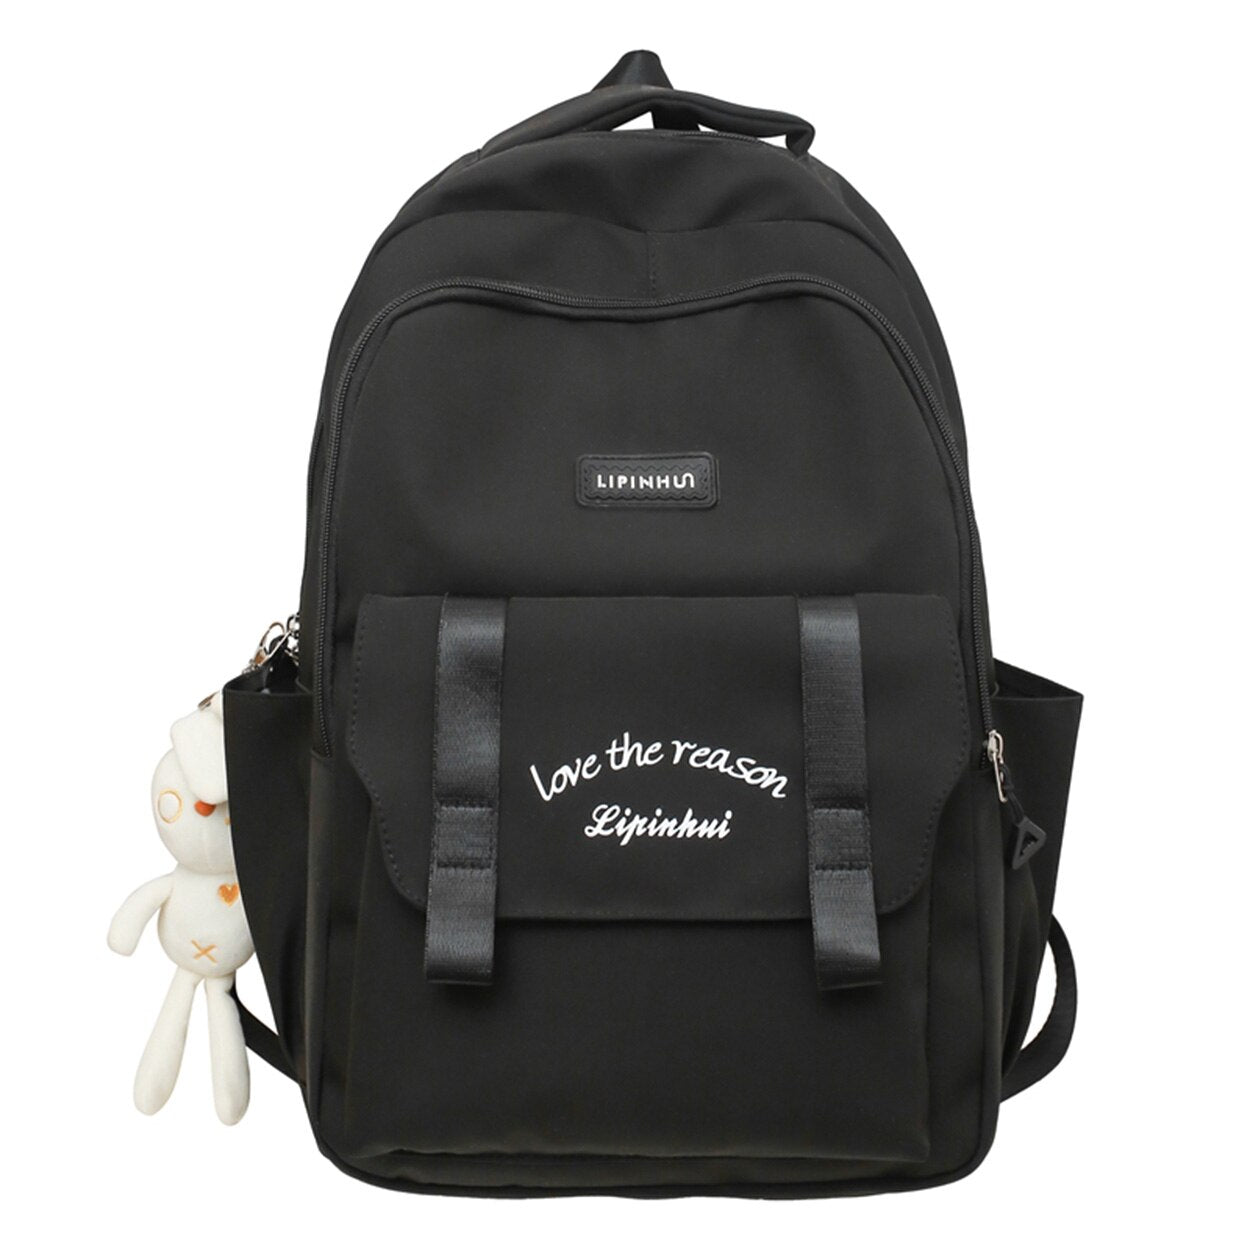 Mojoyce Trendy Female High Capacity School Bag Cute Waterproof Ladies Travel Laptop Women College Backpack Girl Book Bags Fashion Kawaii